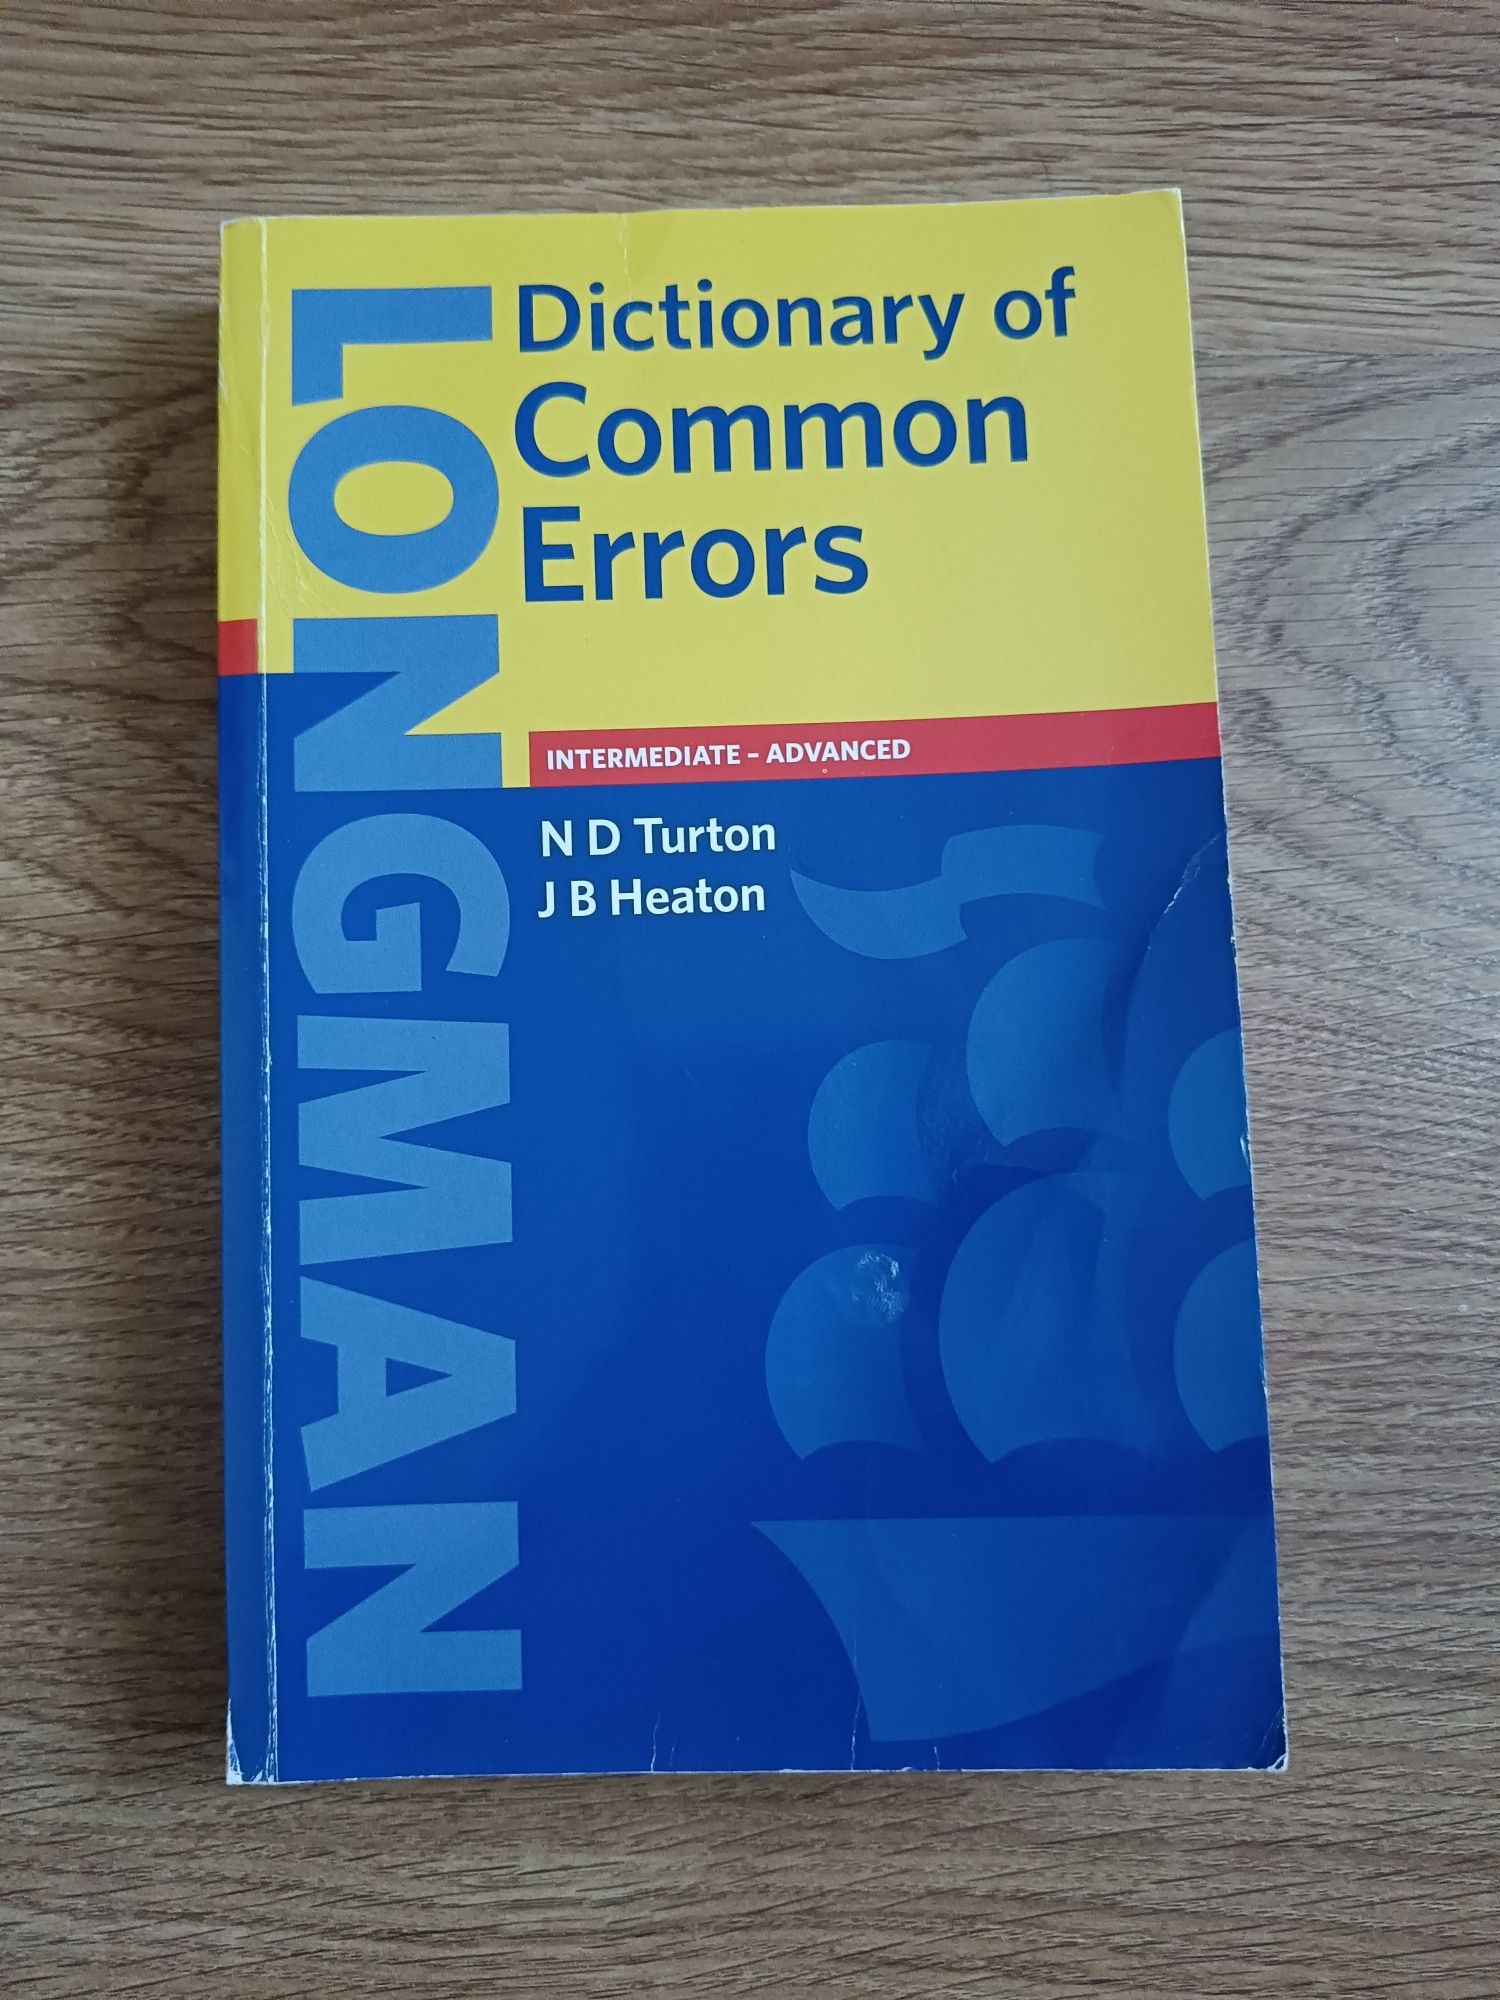 Dictionary of common errors. Longman